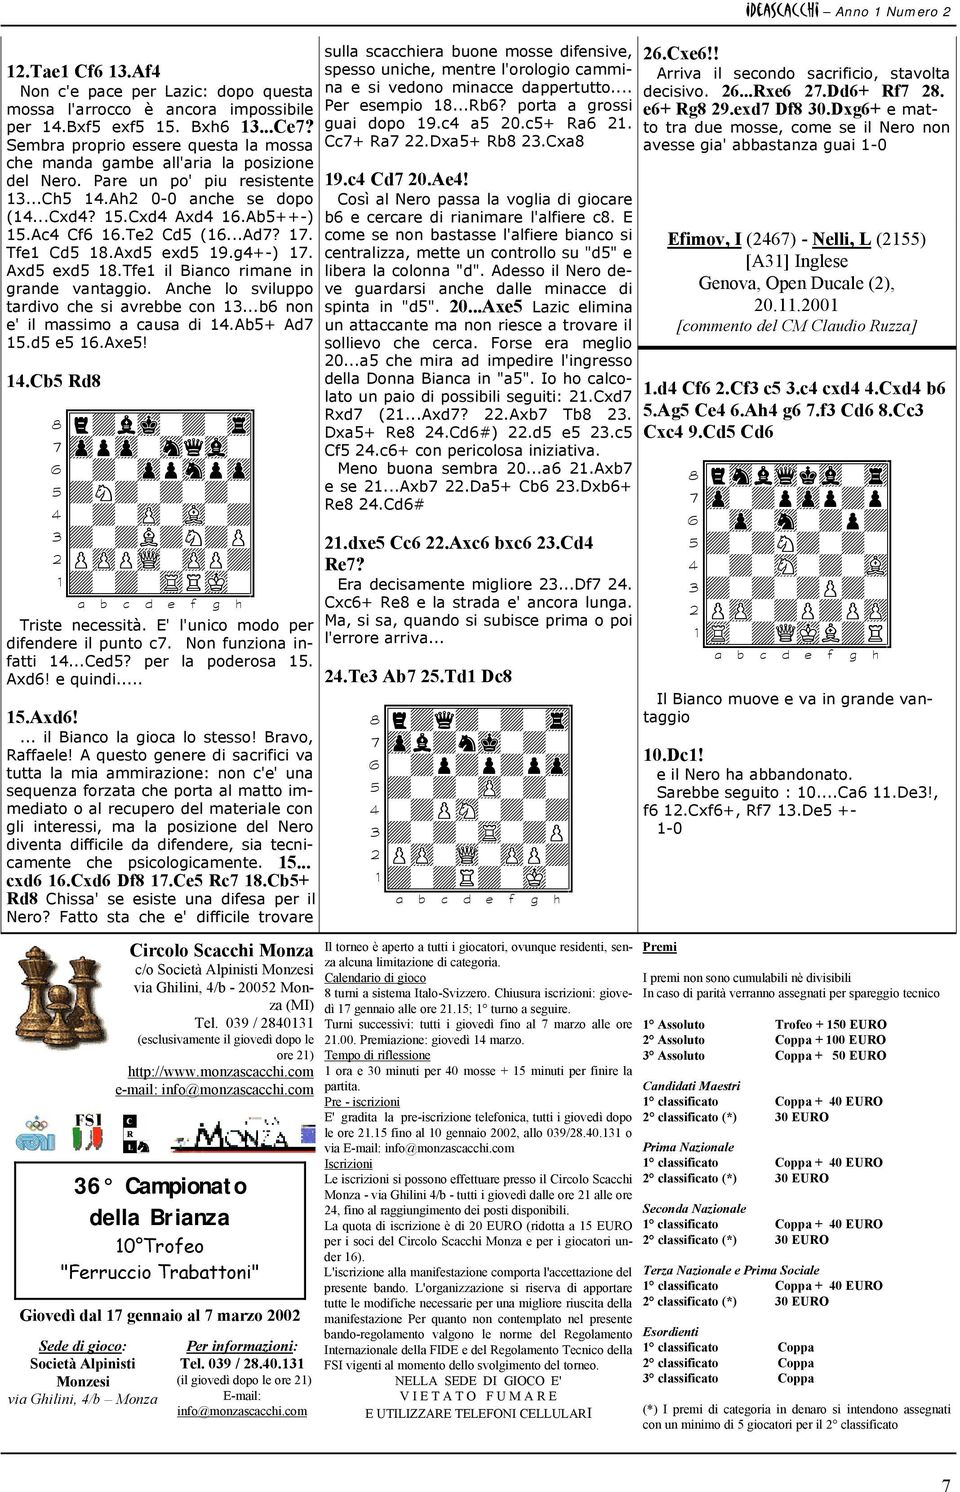 Te2 Cd5 (16...Ad7? 17. Tfe1 Cd5 18.Axd5 exd5 19.g4+-) 17. Axd5 exd5 18.Tfe1 il Bianco rimane in grande vantaggio. Anche lo sviluppo tardivo che si avrebbe con 13...b6 non e' il massimo a causa di 14.